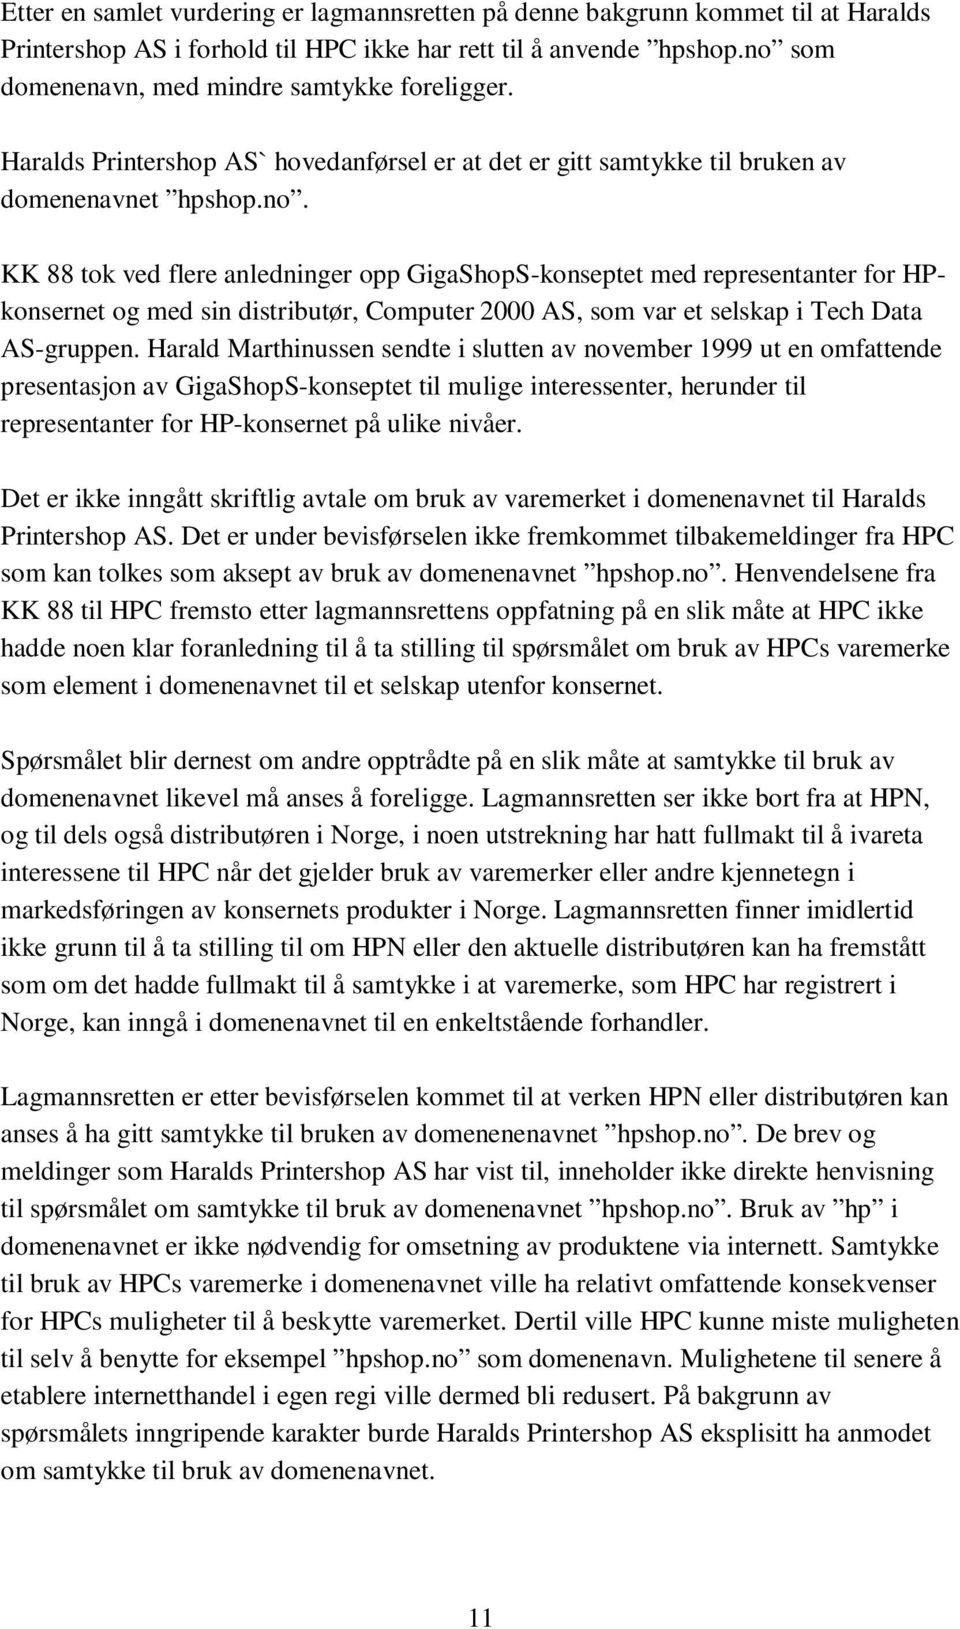 Harald Marthinussen sendte i slutten av november 1999 ut en omfattende presentasjon av GigaShopS-konseptet til mulige interessenter, herunder til representanter for HP-konsernet på ulike nivåer.